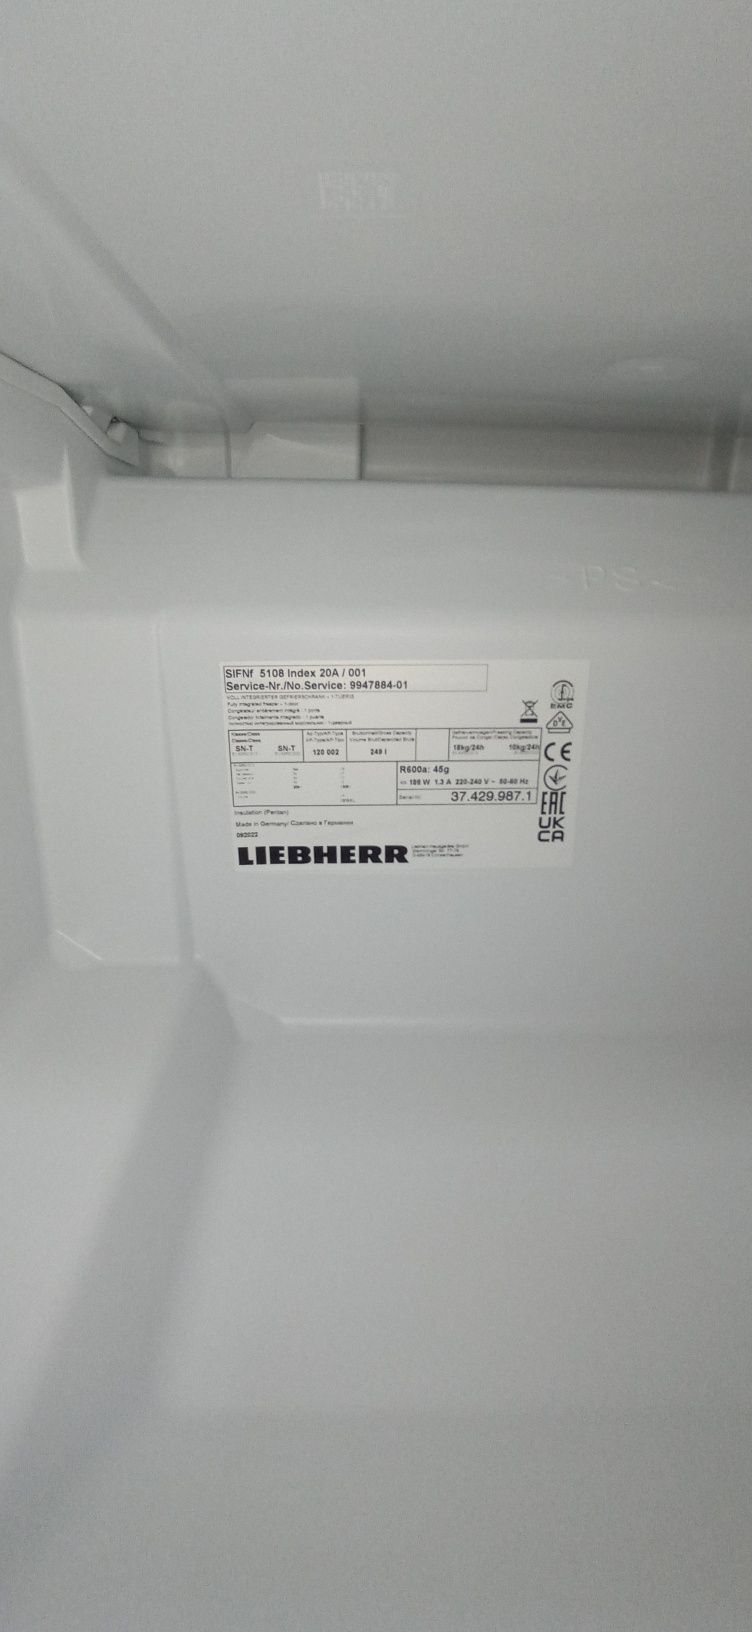 Встраиваемая Морозильная камера Liebherr SIFNf 5108 на 249 литров